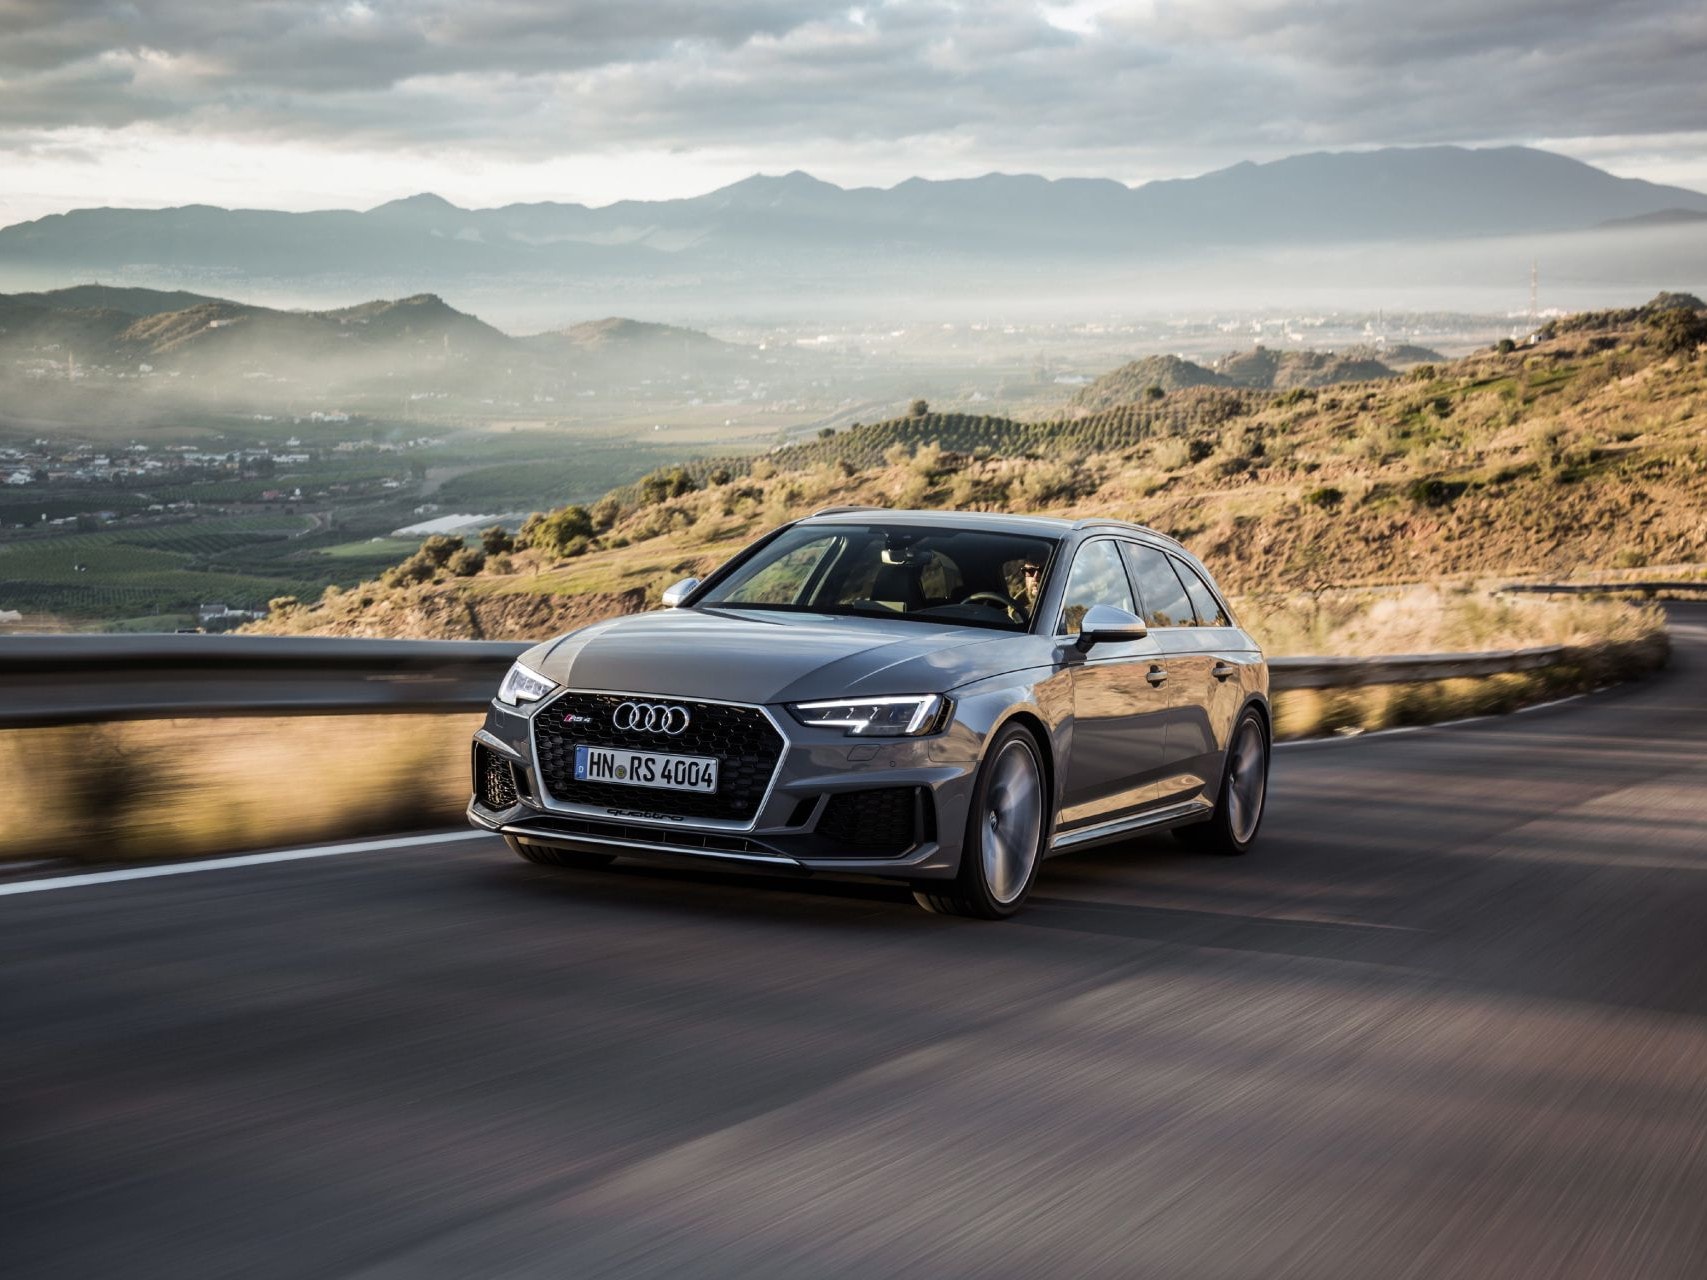 Prodej nového modelu Audi RS 4 Avant zahájen